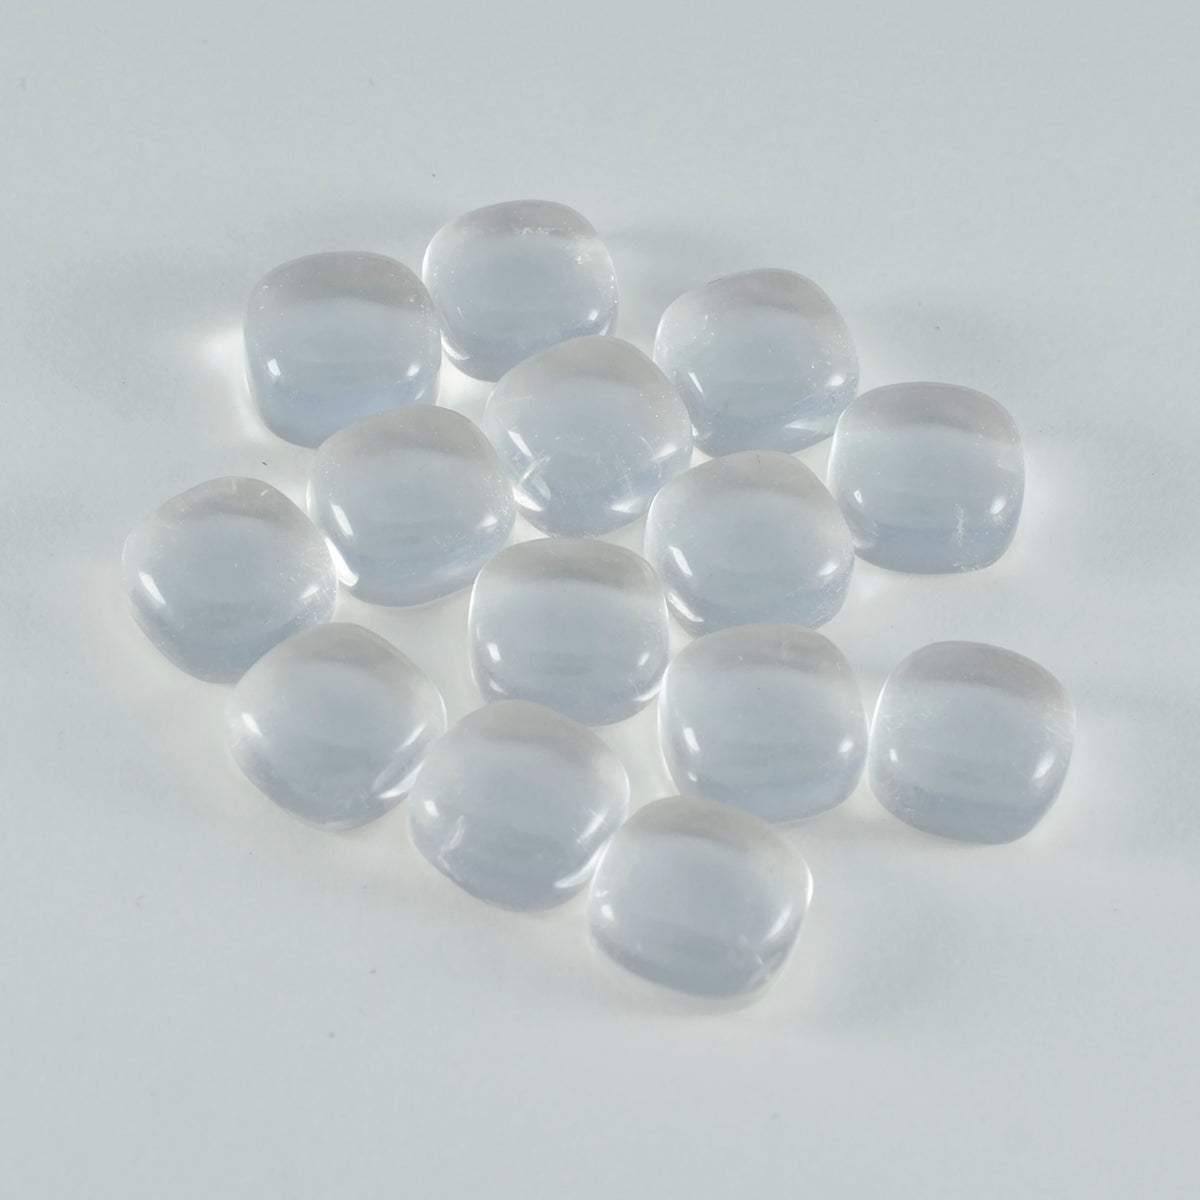 Riyogems 1 Stück weißer Kristallquarz-Cabochon, 5 x 5 mm, Kissenform, wunderschöner Qualitätsstein